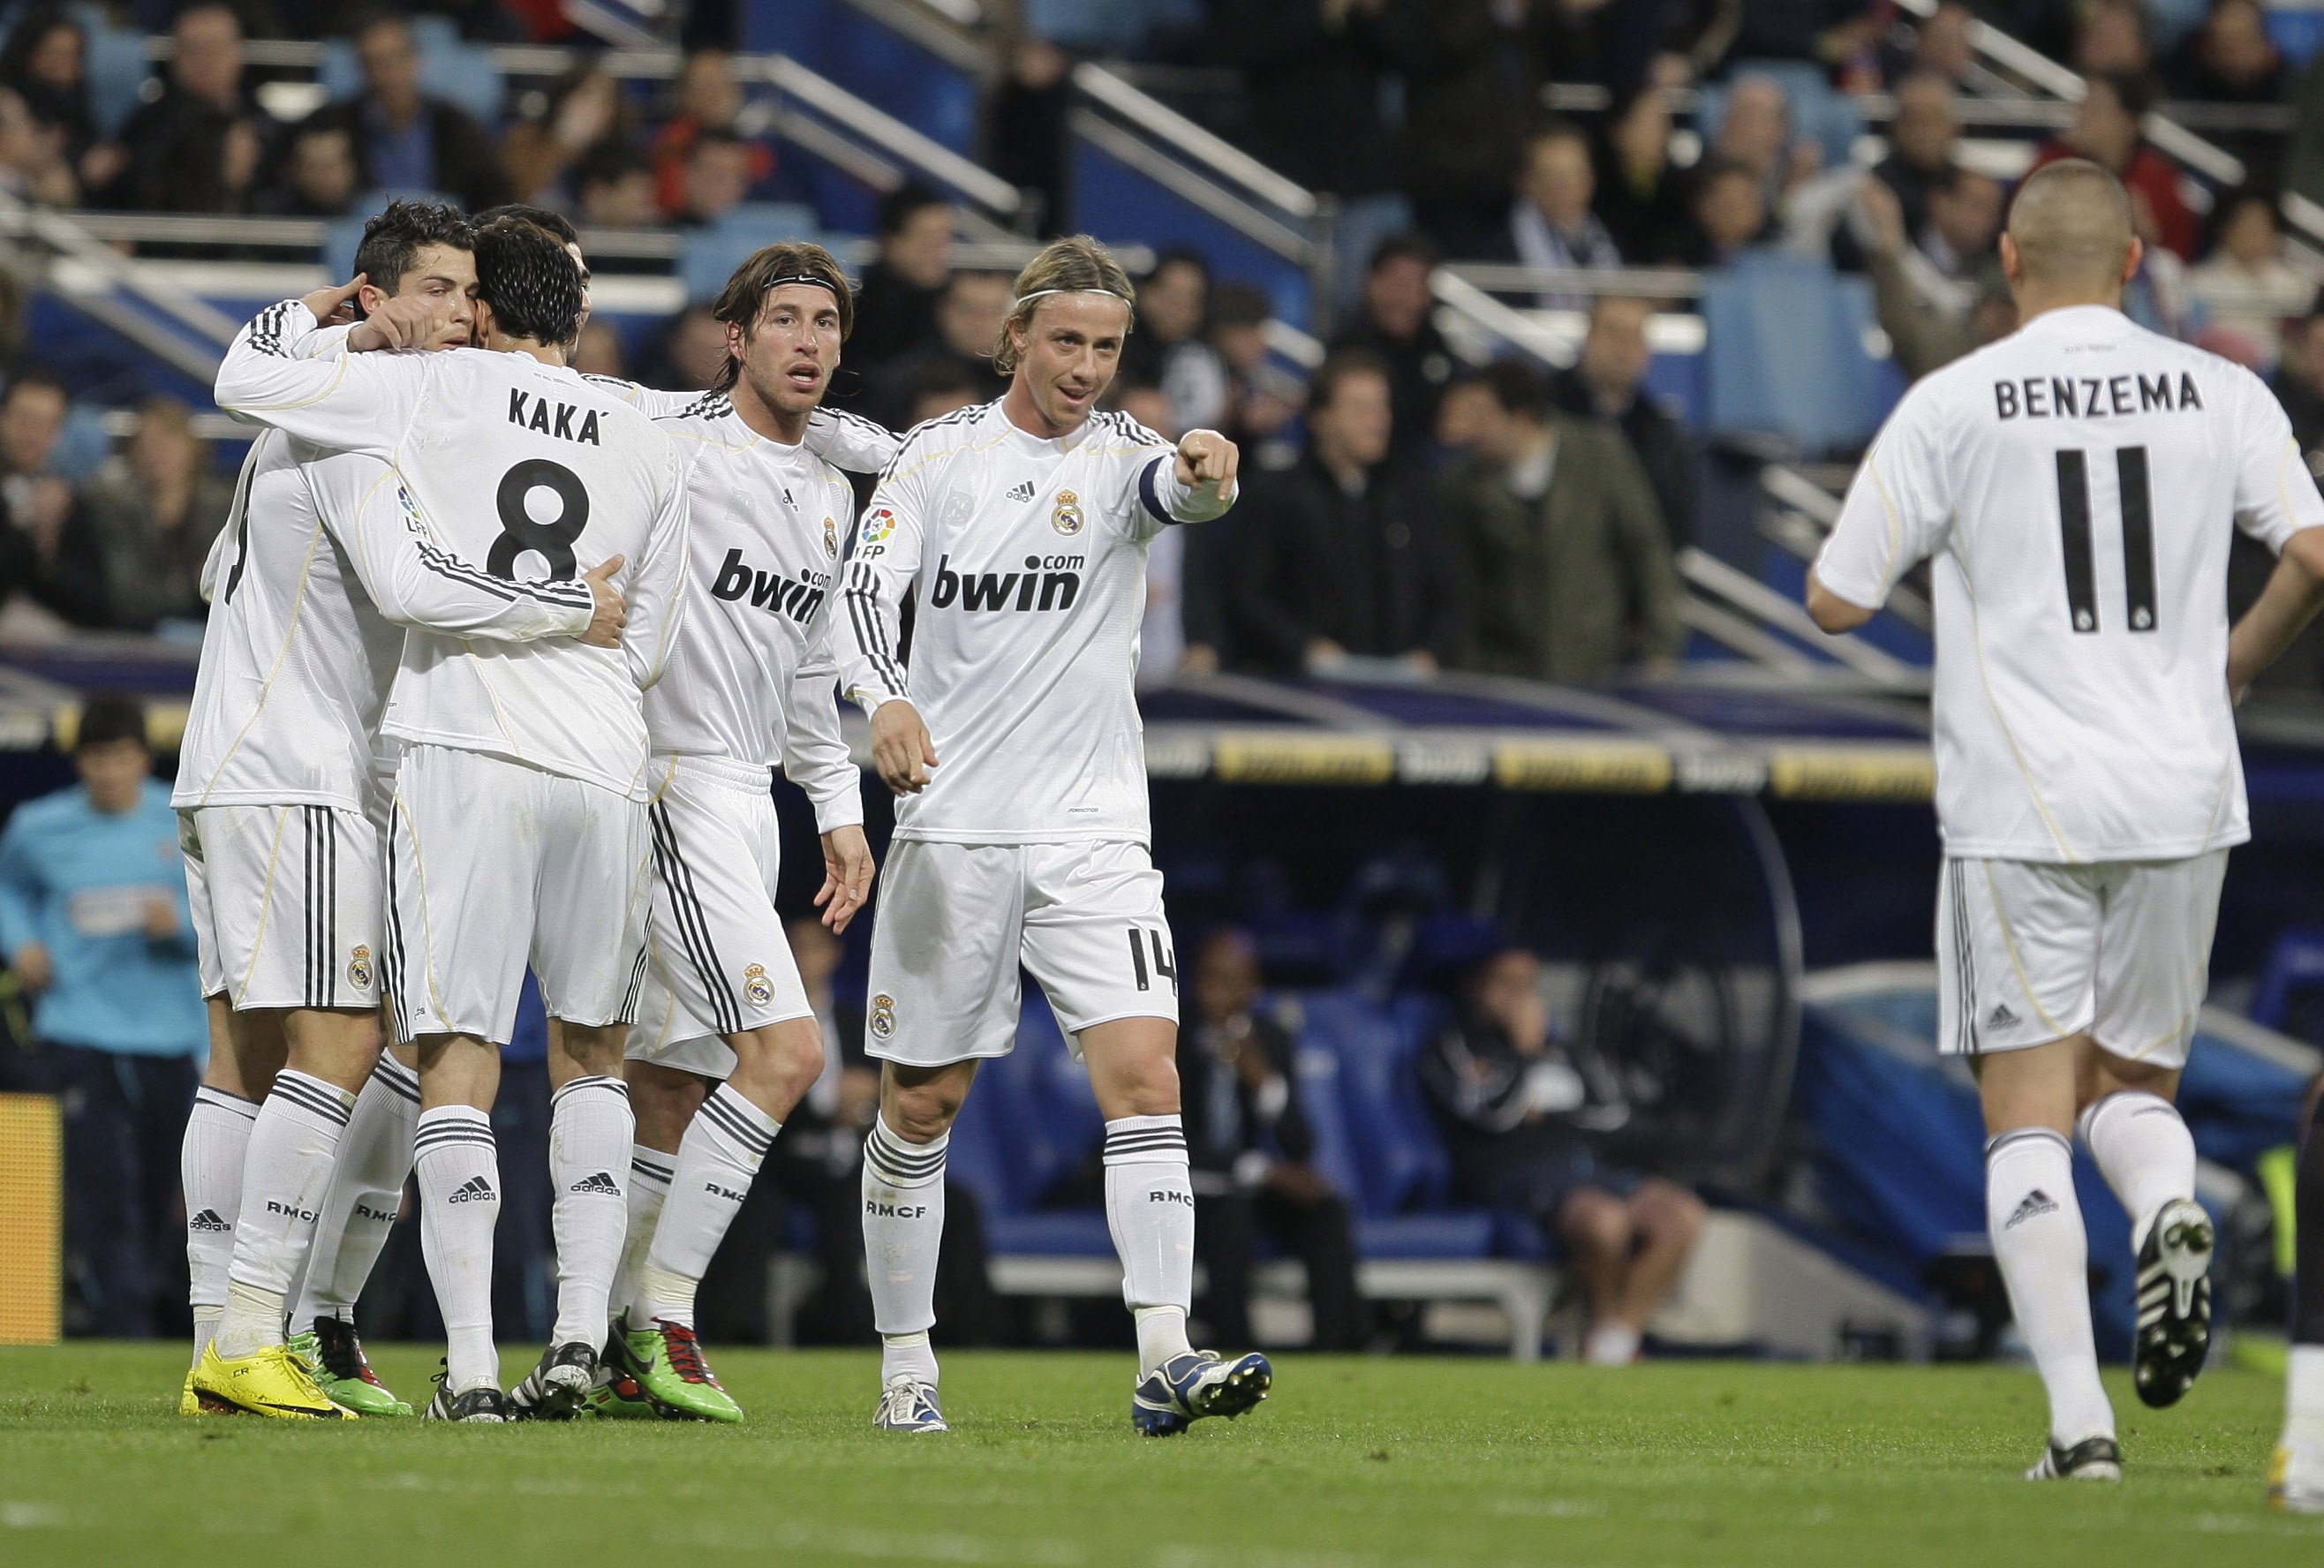 Malaga, Real Madrid, Patrick Mtiliga, Cristiano Ronaldo, La Liga